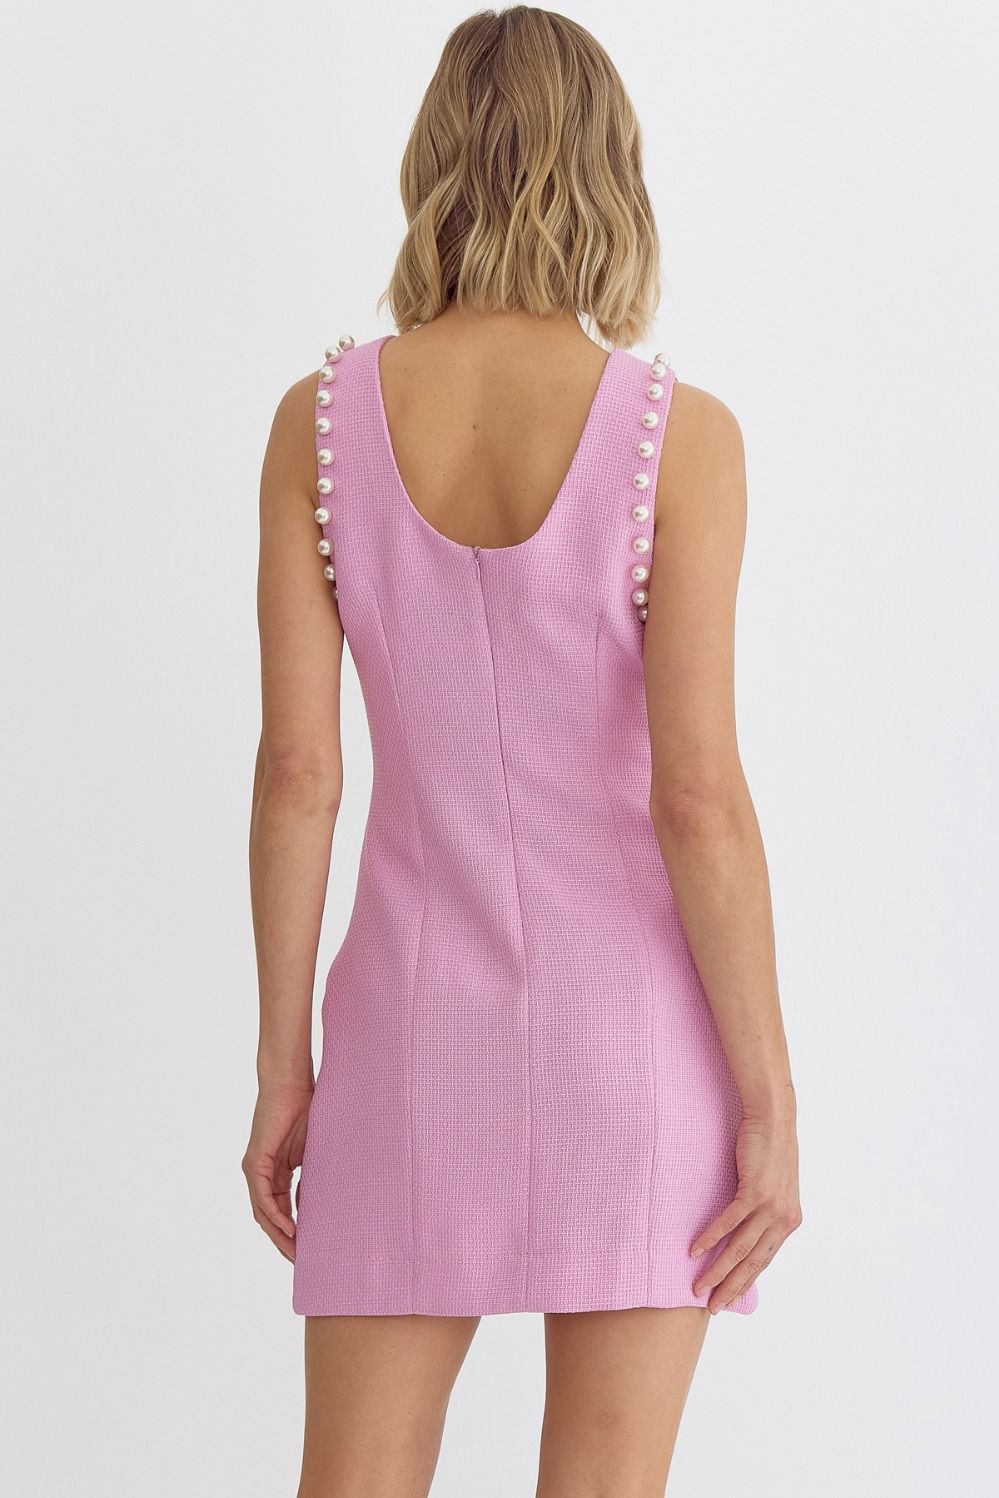 Margot Pink Pearl Trim Mini Dress